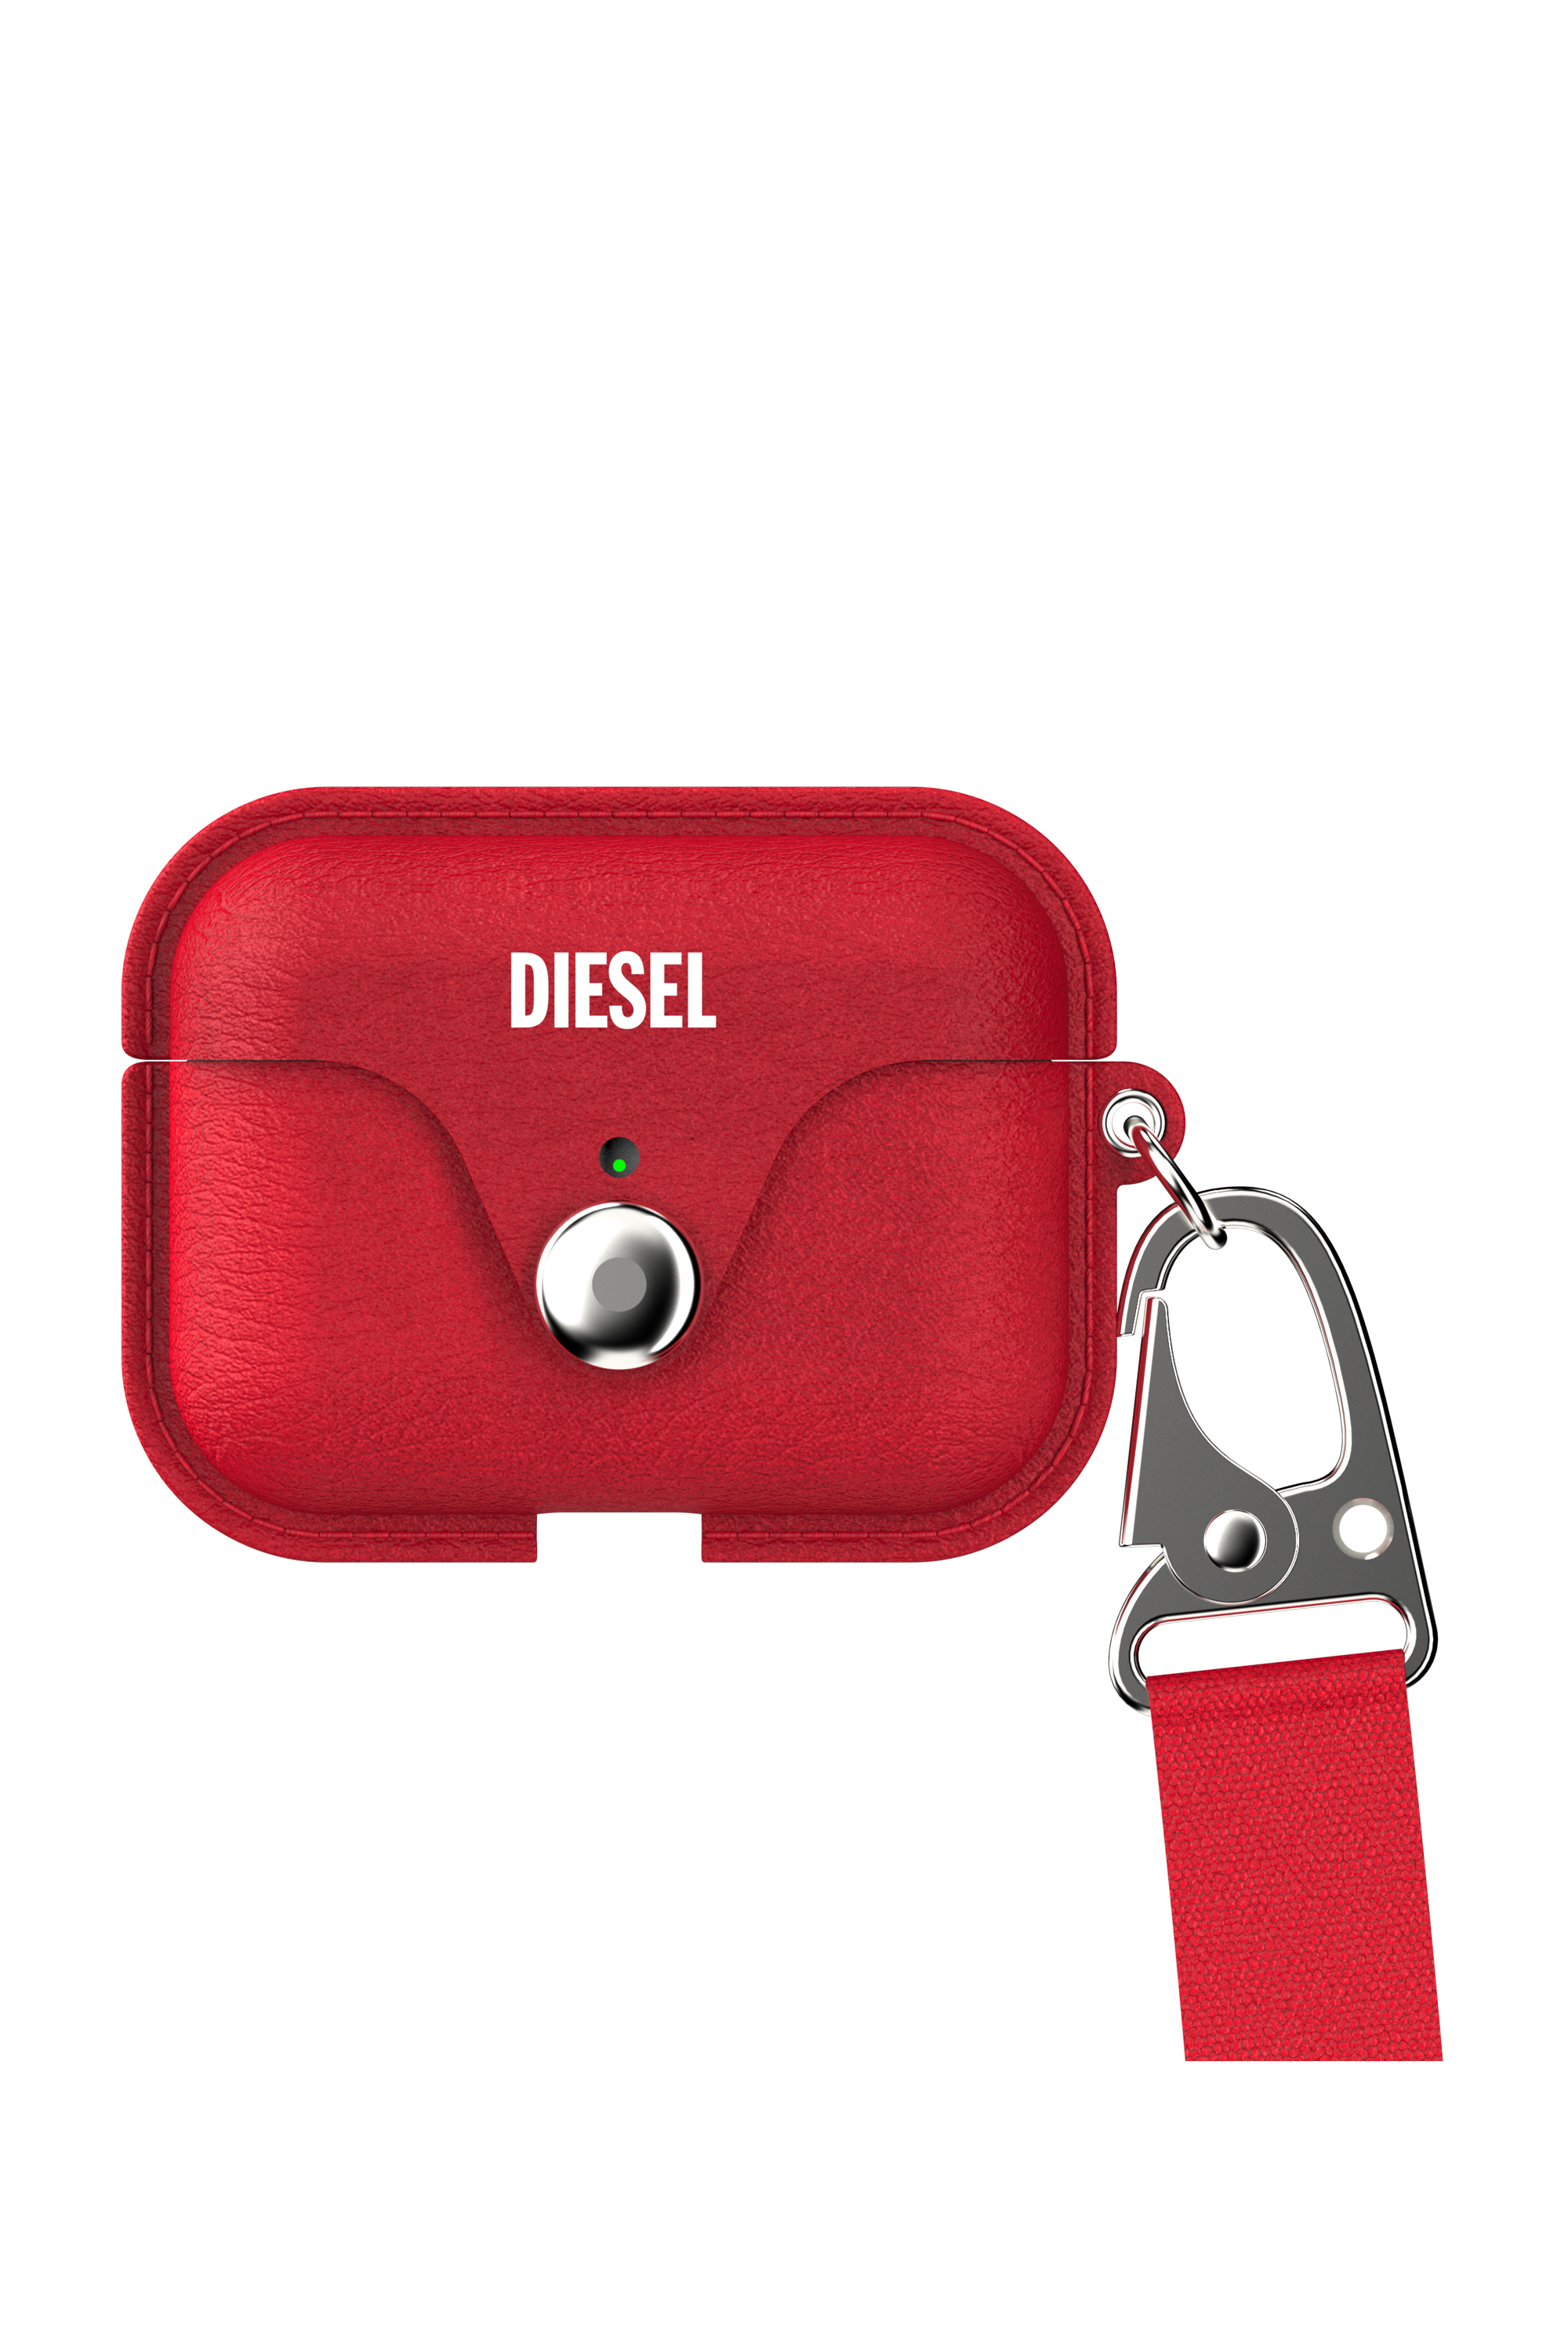 Diesel - 49860 AIRPOD CASE, Rouge - Image 1